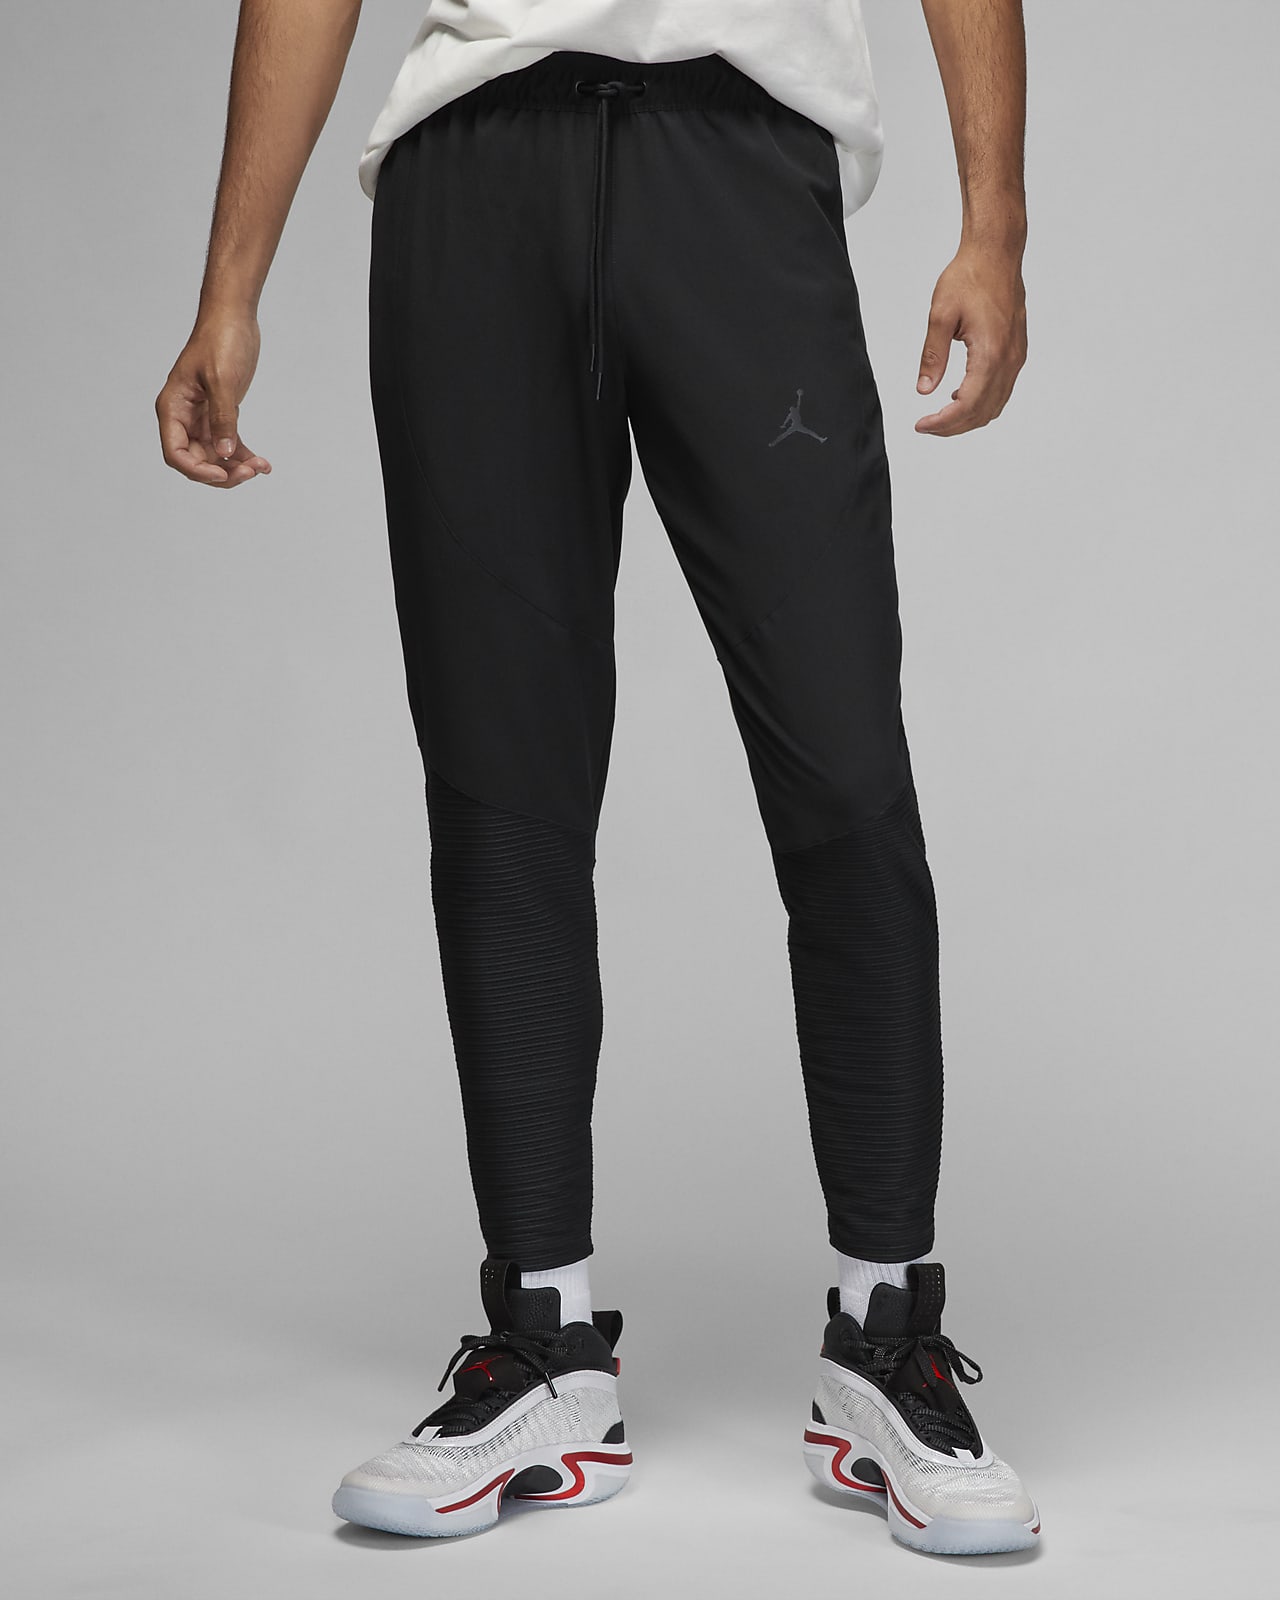 begaan informatie Zuiver Jordan Dri-FIT Sport Men's Woven Pants. Nike.com